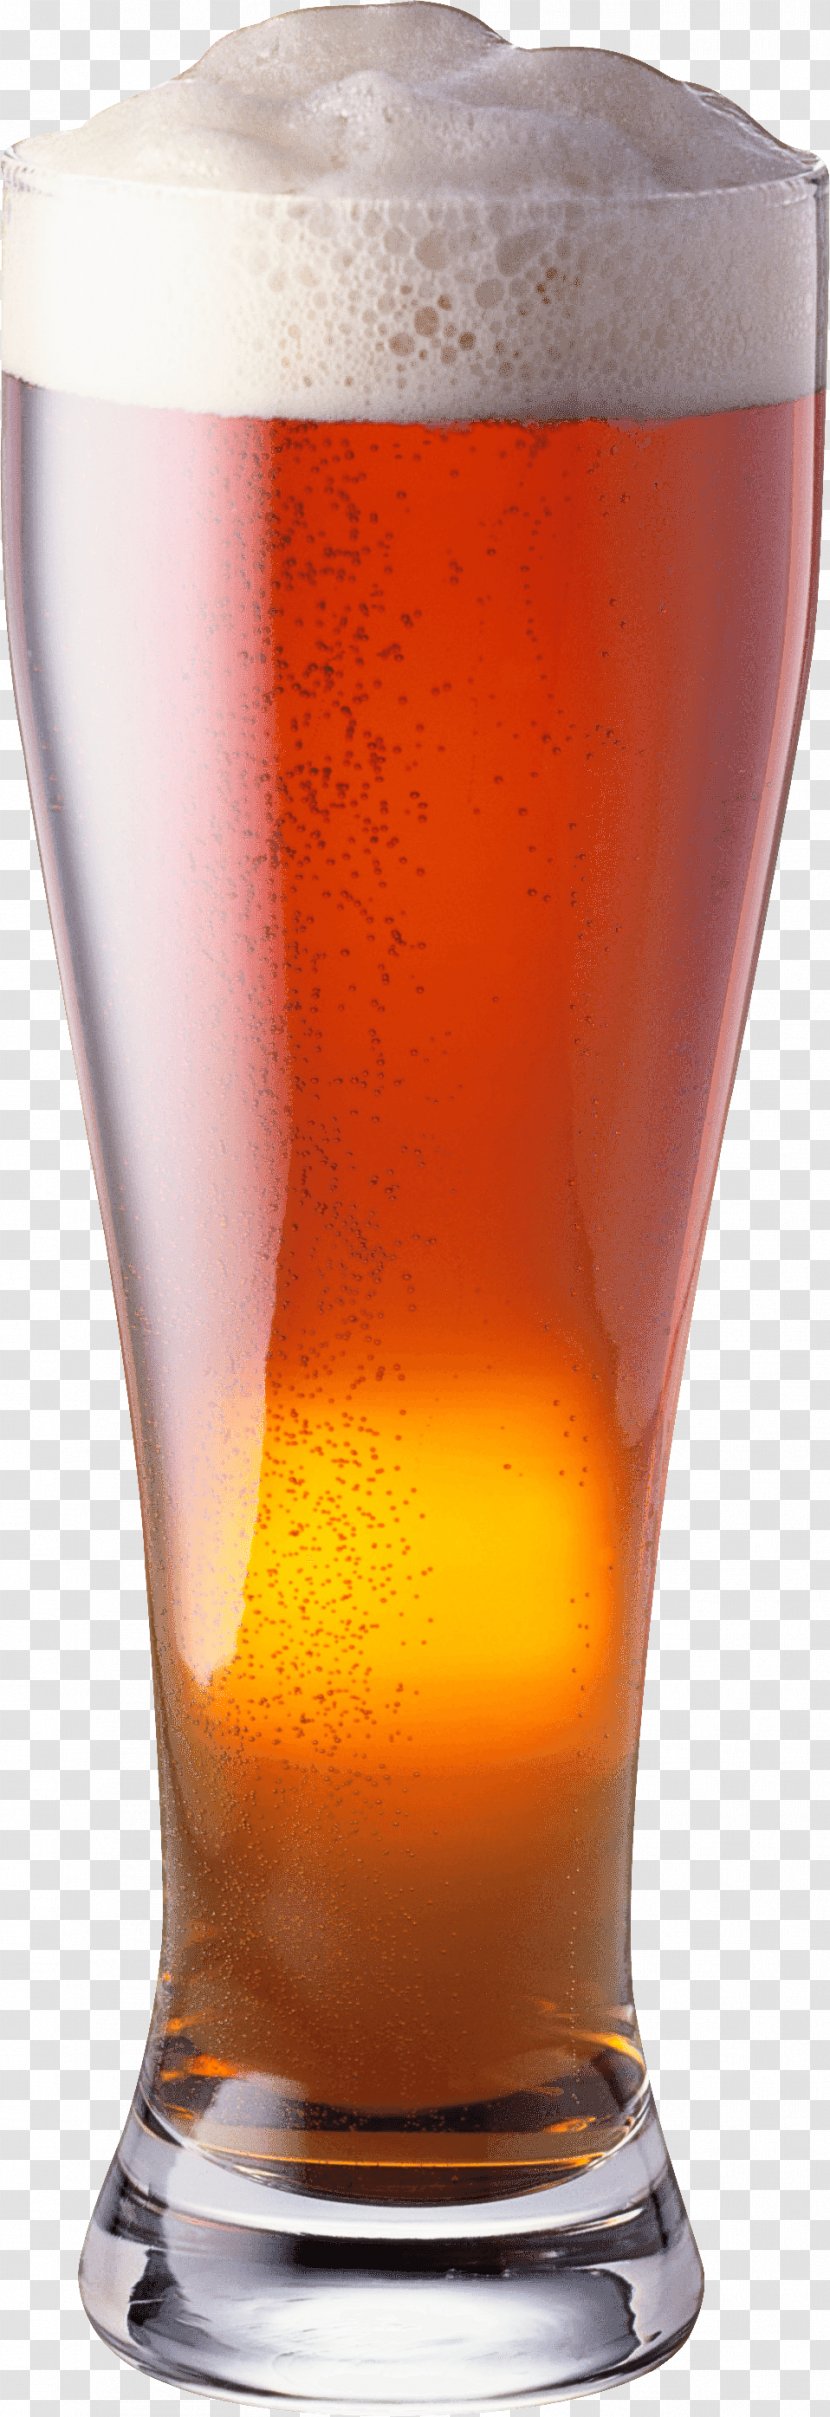 Beer Glass Pint Drink Lager - Drinkware - Caramel Color Transparent PNG